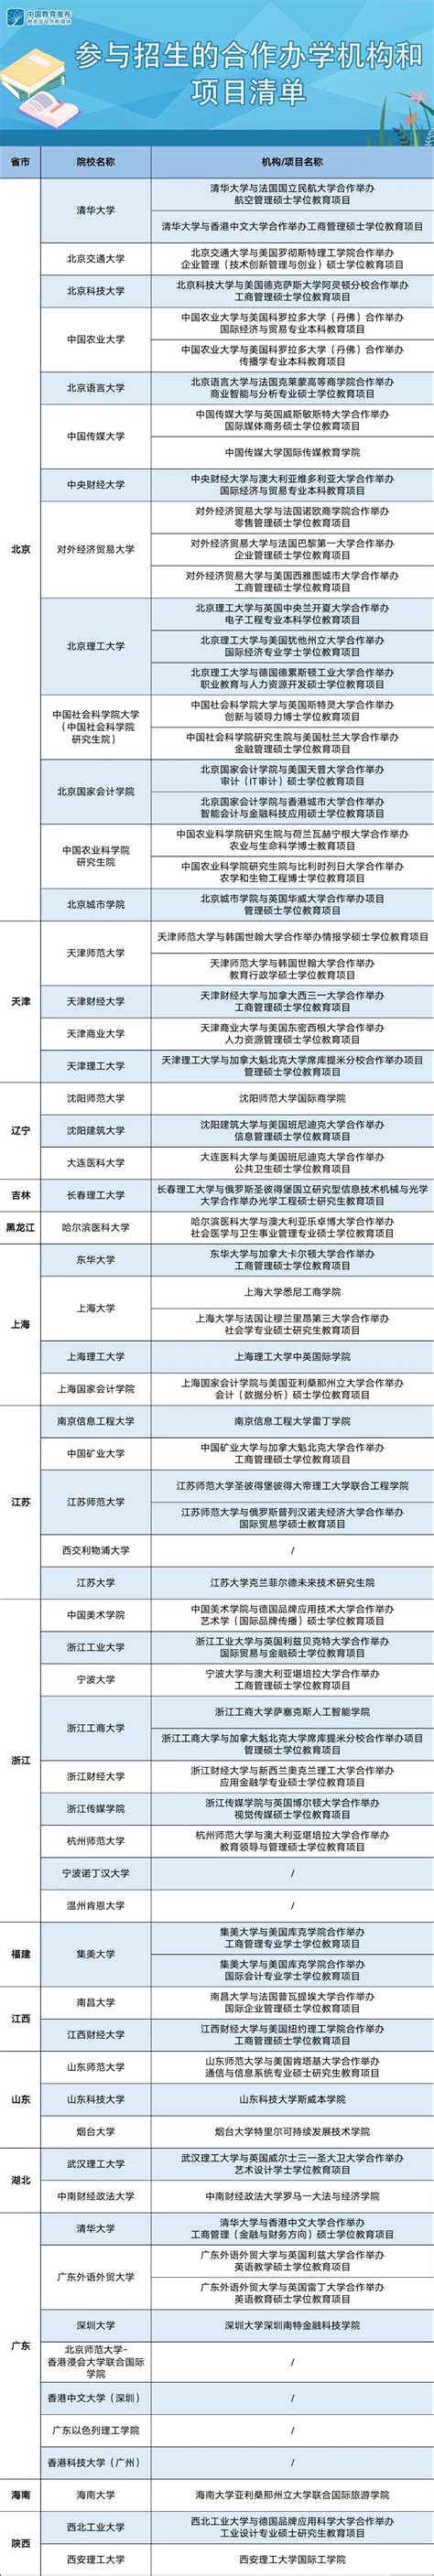 上海交通大学日本国际本科项目招收详情-上海交通大学出国留学-留学择校一点通